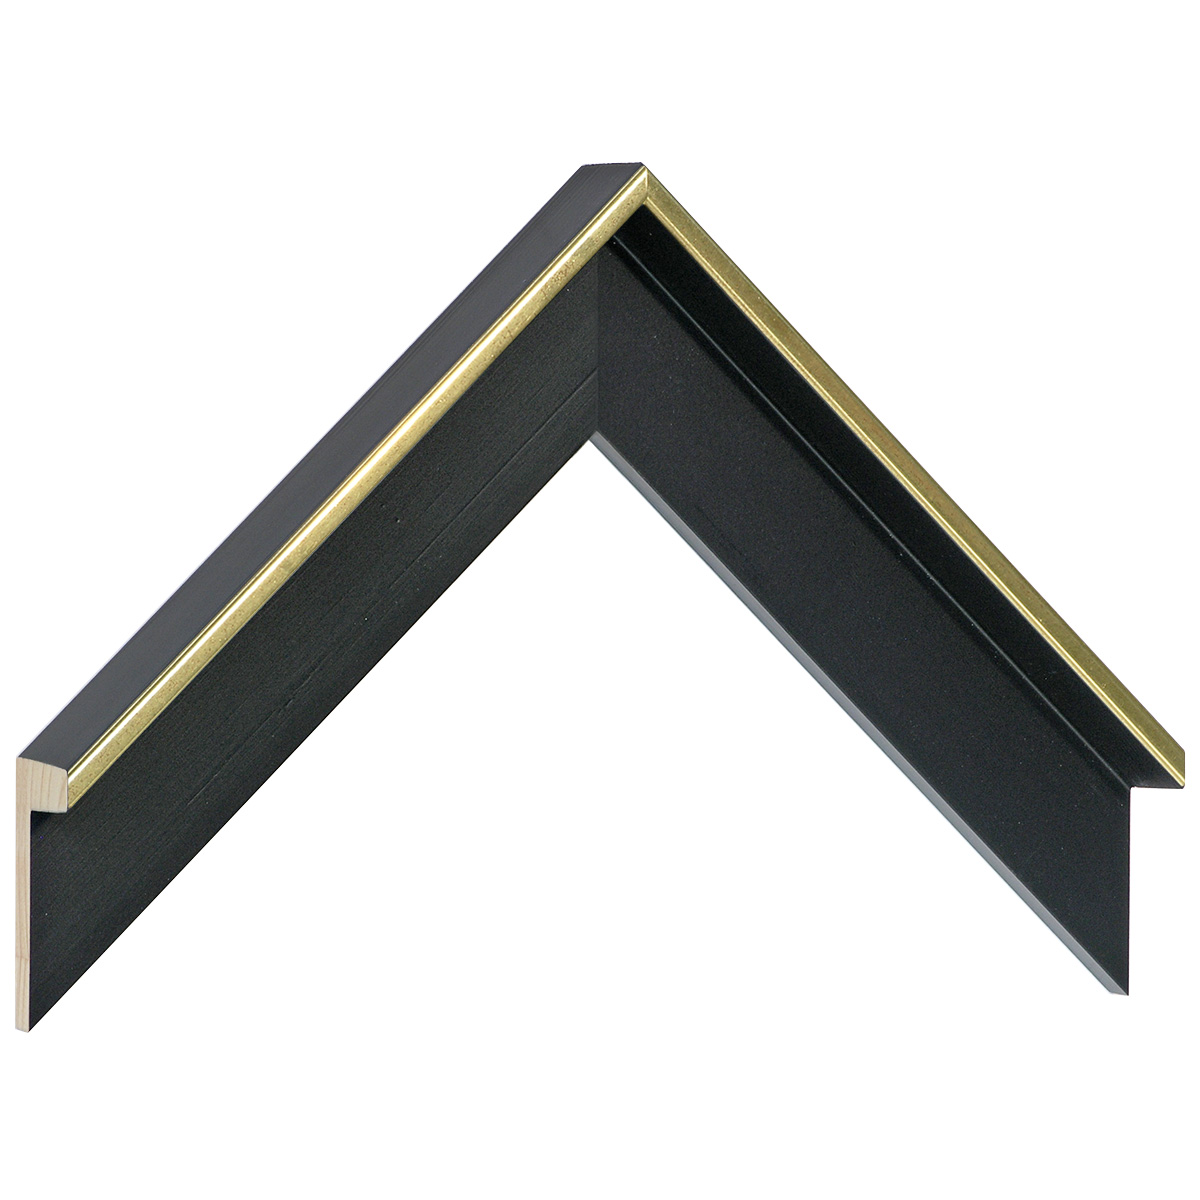 Moulding fir L shape, width 34mm - Black-Gold - Sample